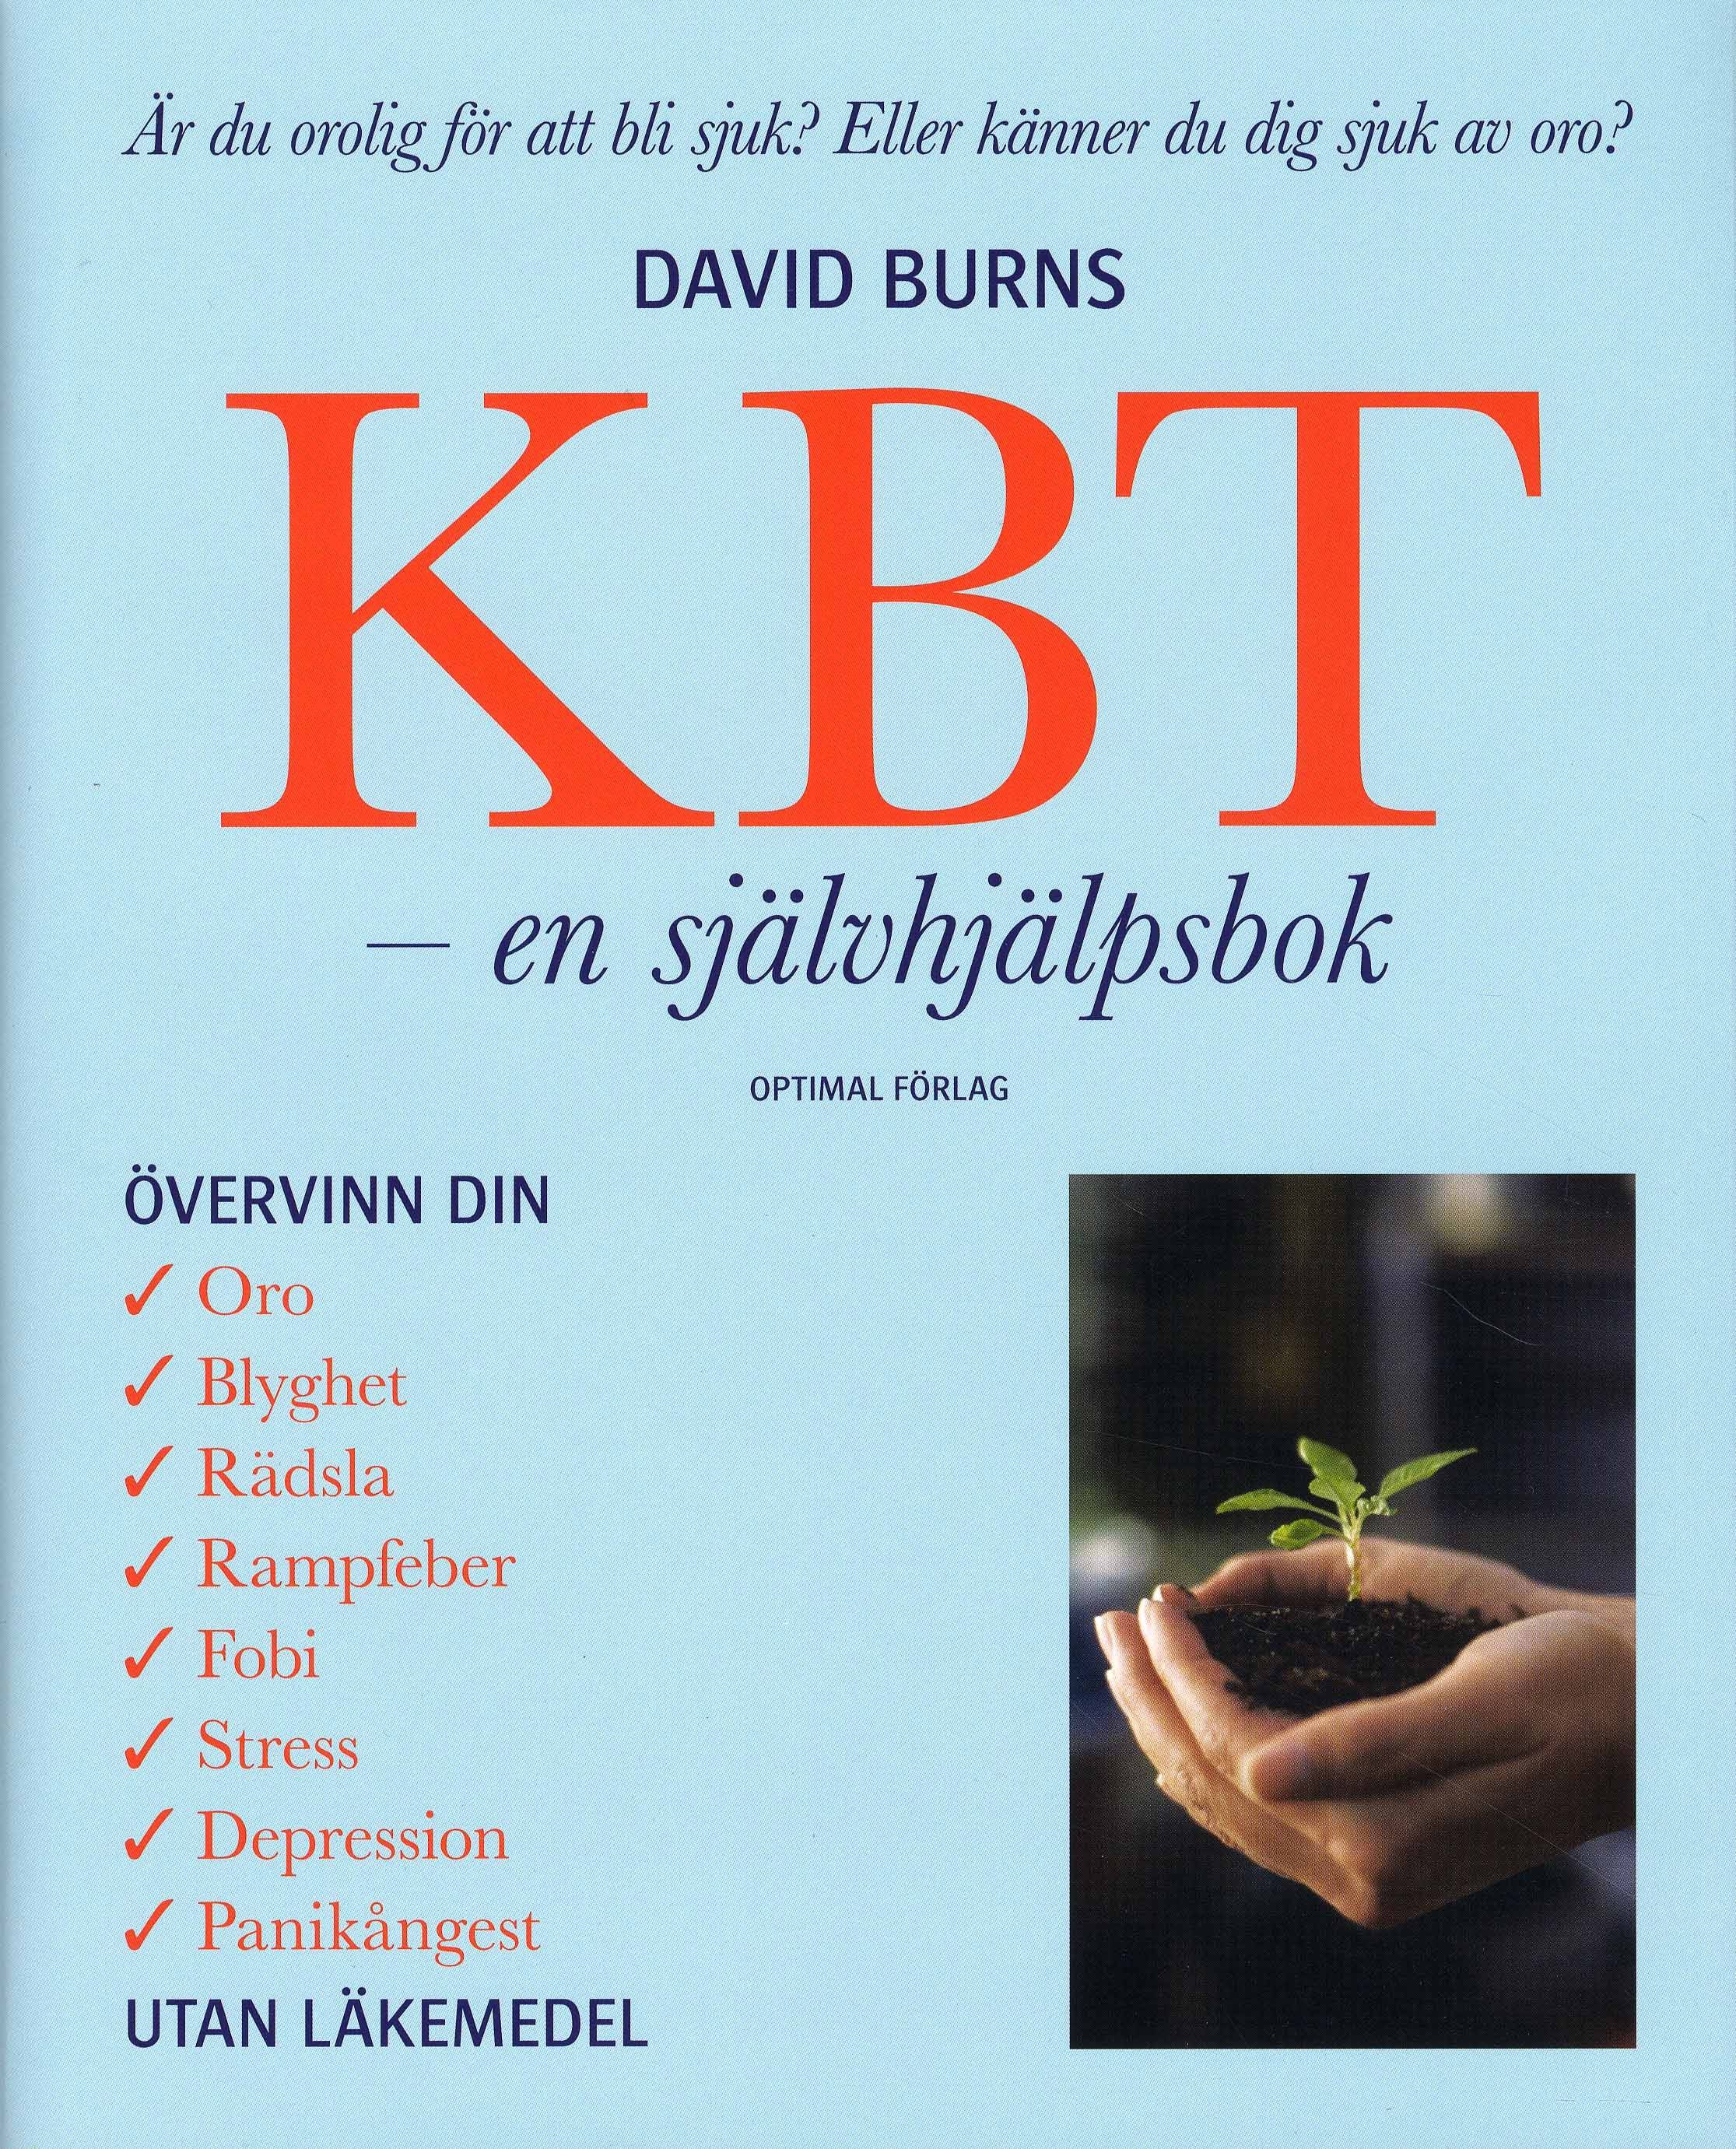 KBT, Kognitiv beteendeterapi - En självhjälpsbok